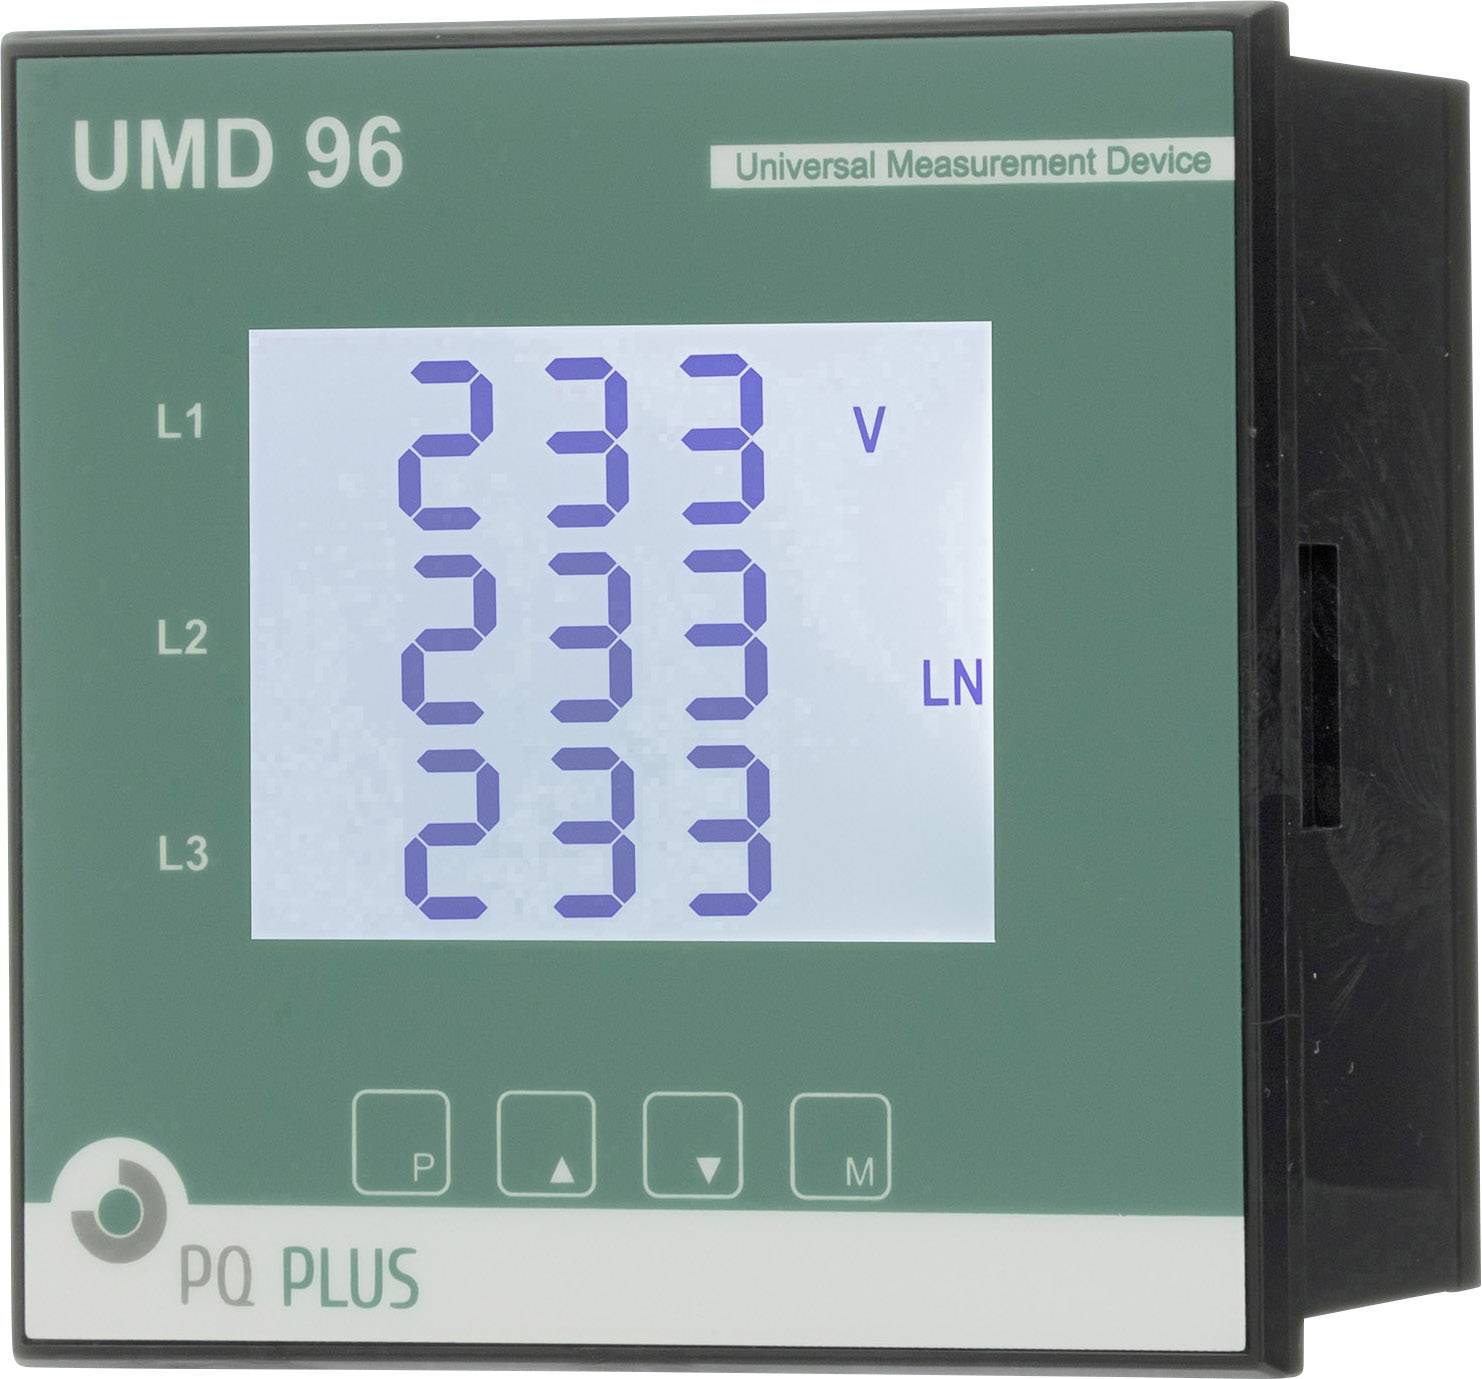 Pq Plus Umd 96el Universal Measuring Device Control Panel Umd